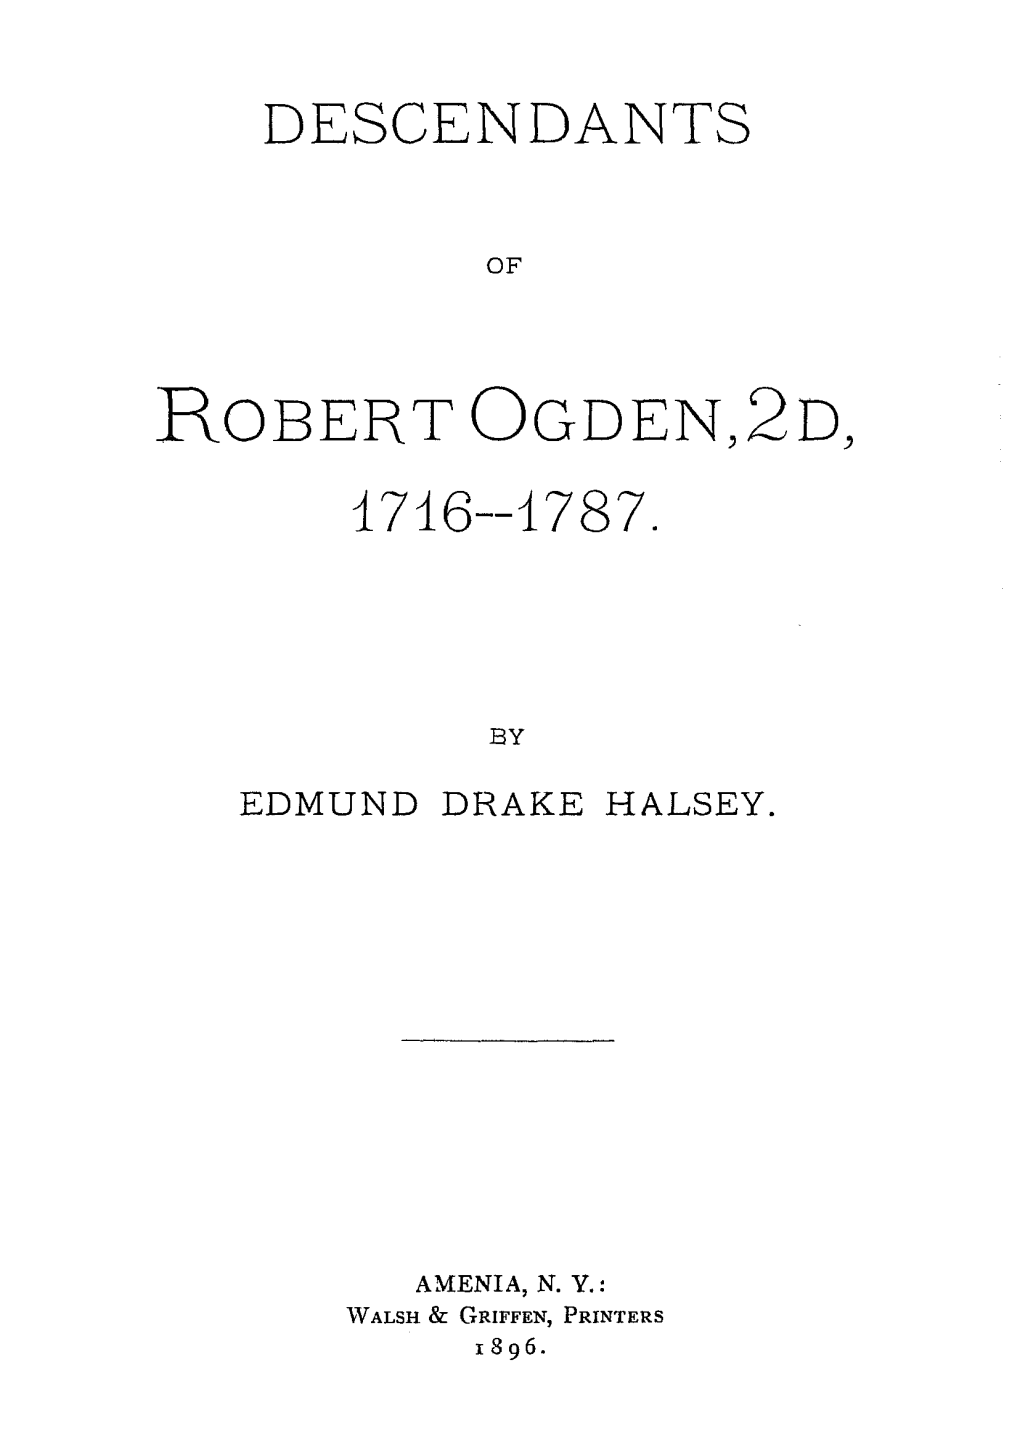 ROBERT OGDEN,2D, I 716--1787